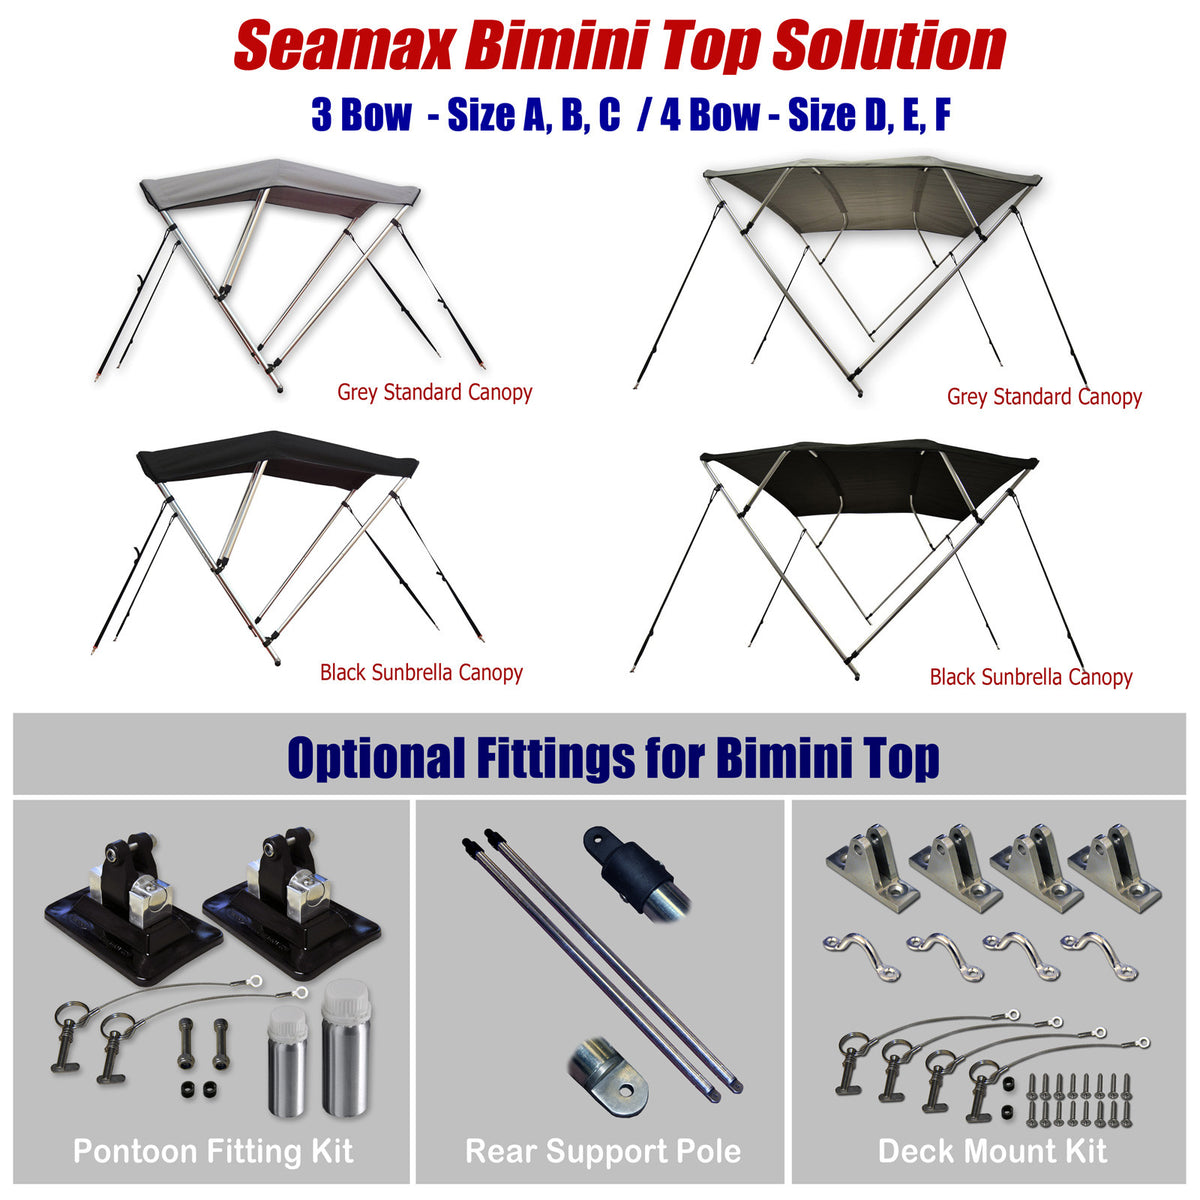 Bimini Deck Mount Kit for Bimini - Seamax Marine